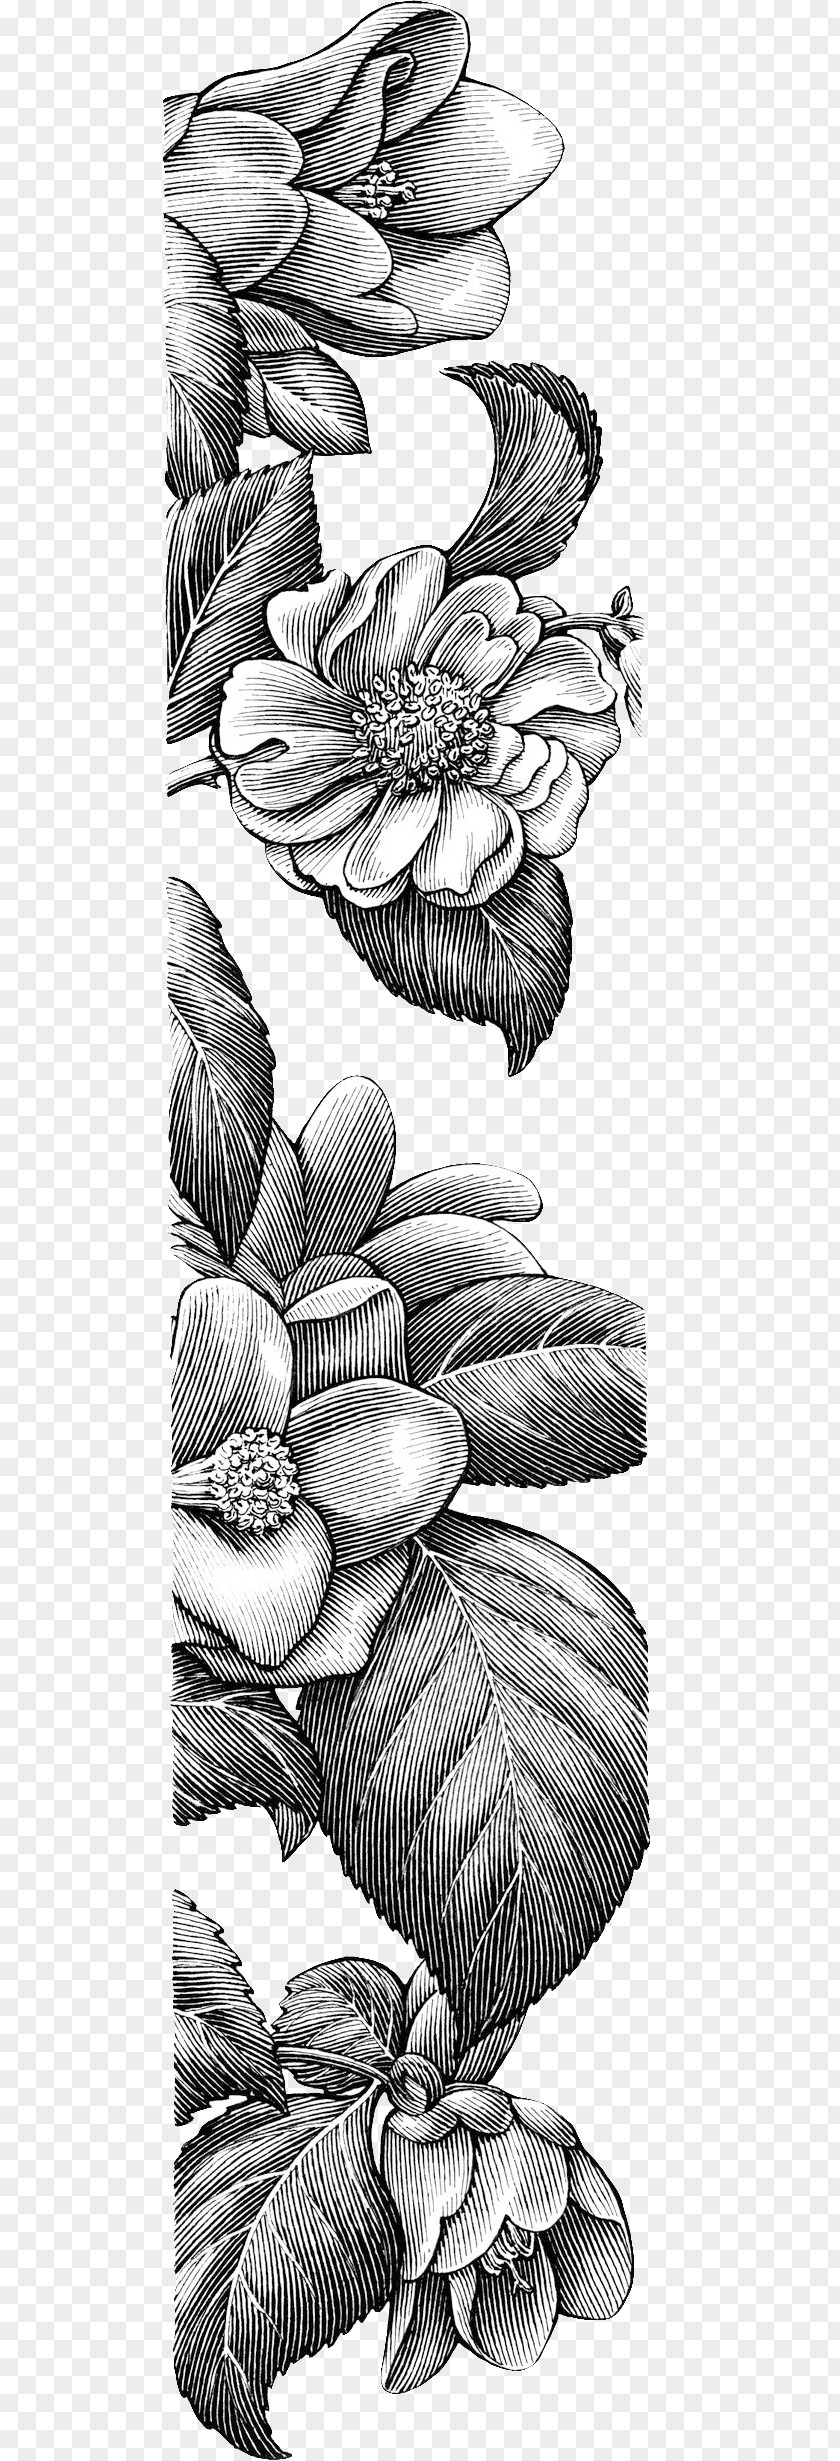 Sketch Decorative Floral Borders Drawing Line Art Visual Arts Idea PNG